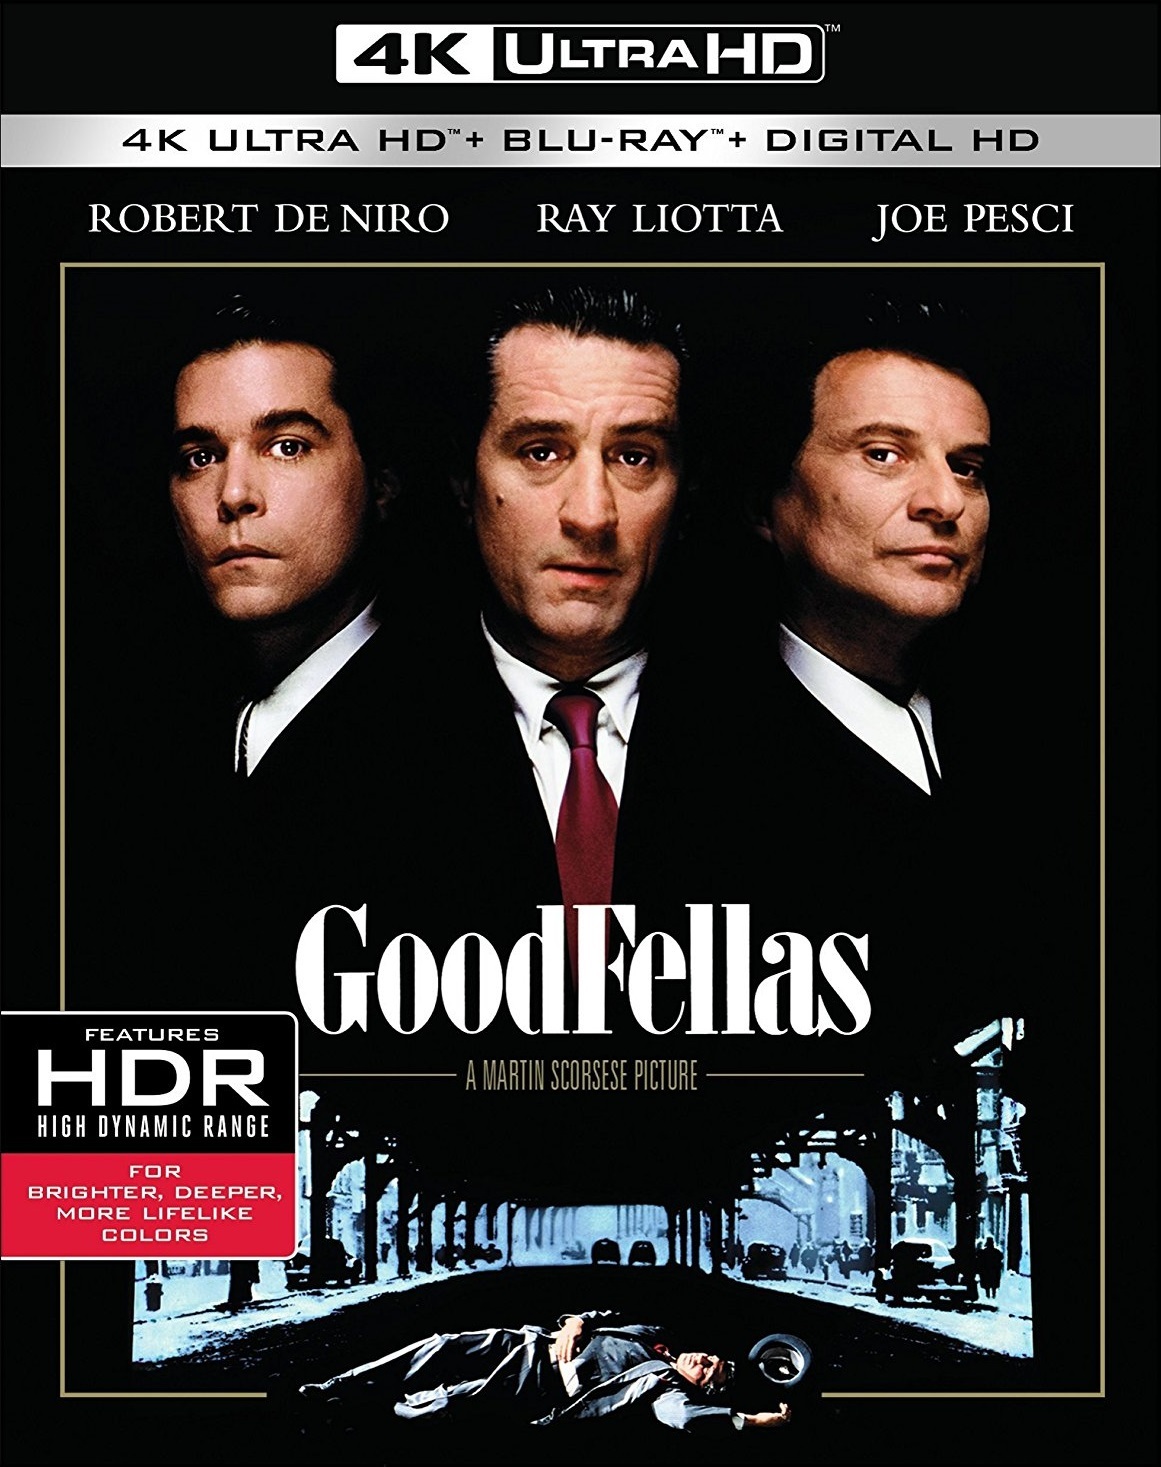 [好家伙].Goodfellas.1990.25th.Anniversary.4K.Mastered.BluRay.1080p.AVC.DTS-HD.MA.5.1-wezjh@OurBits   39G-1.jpg